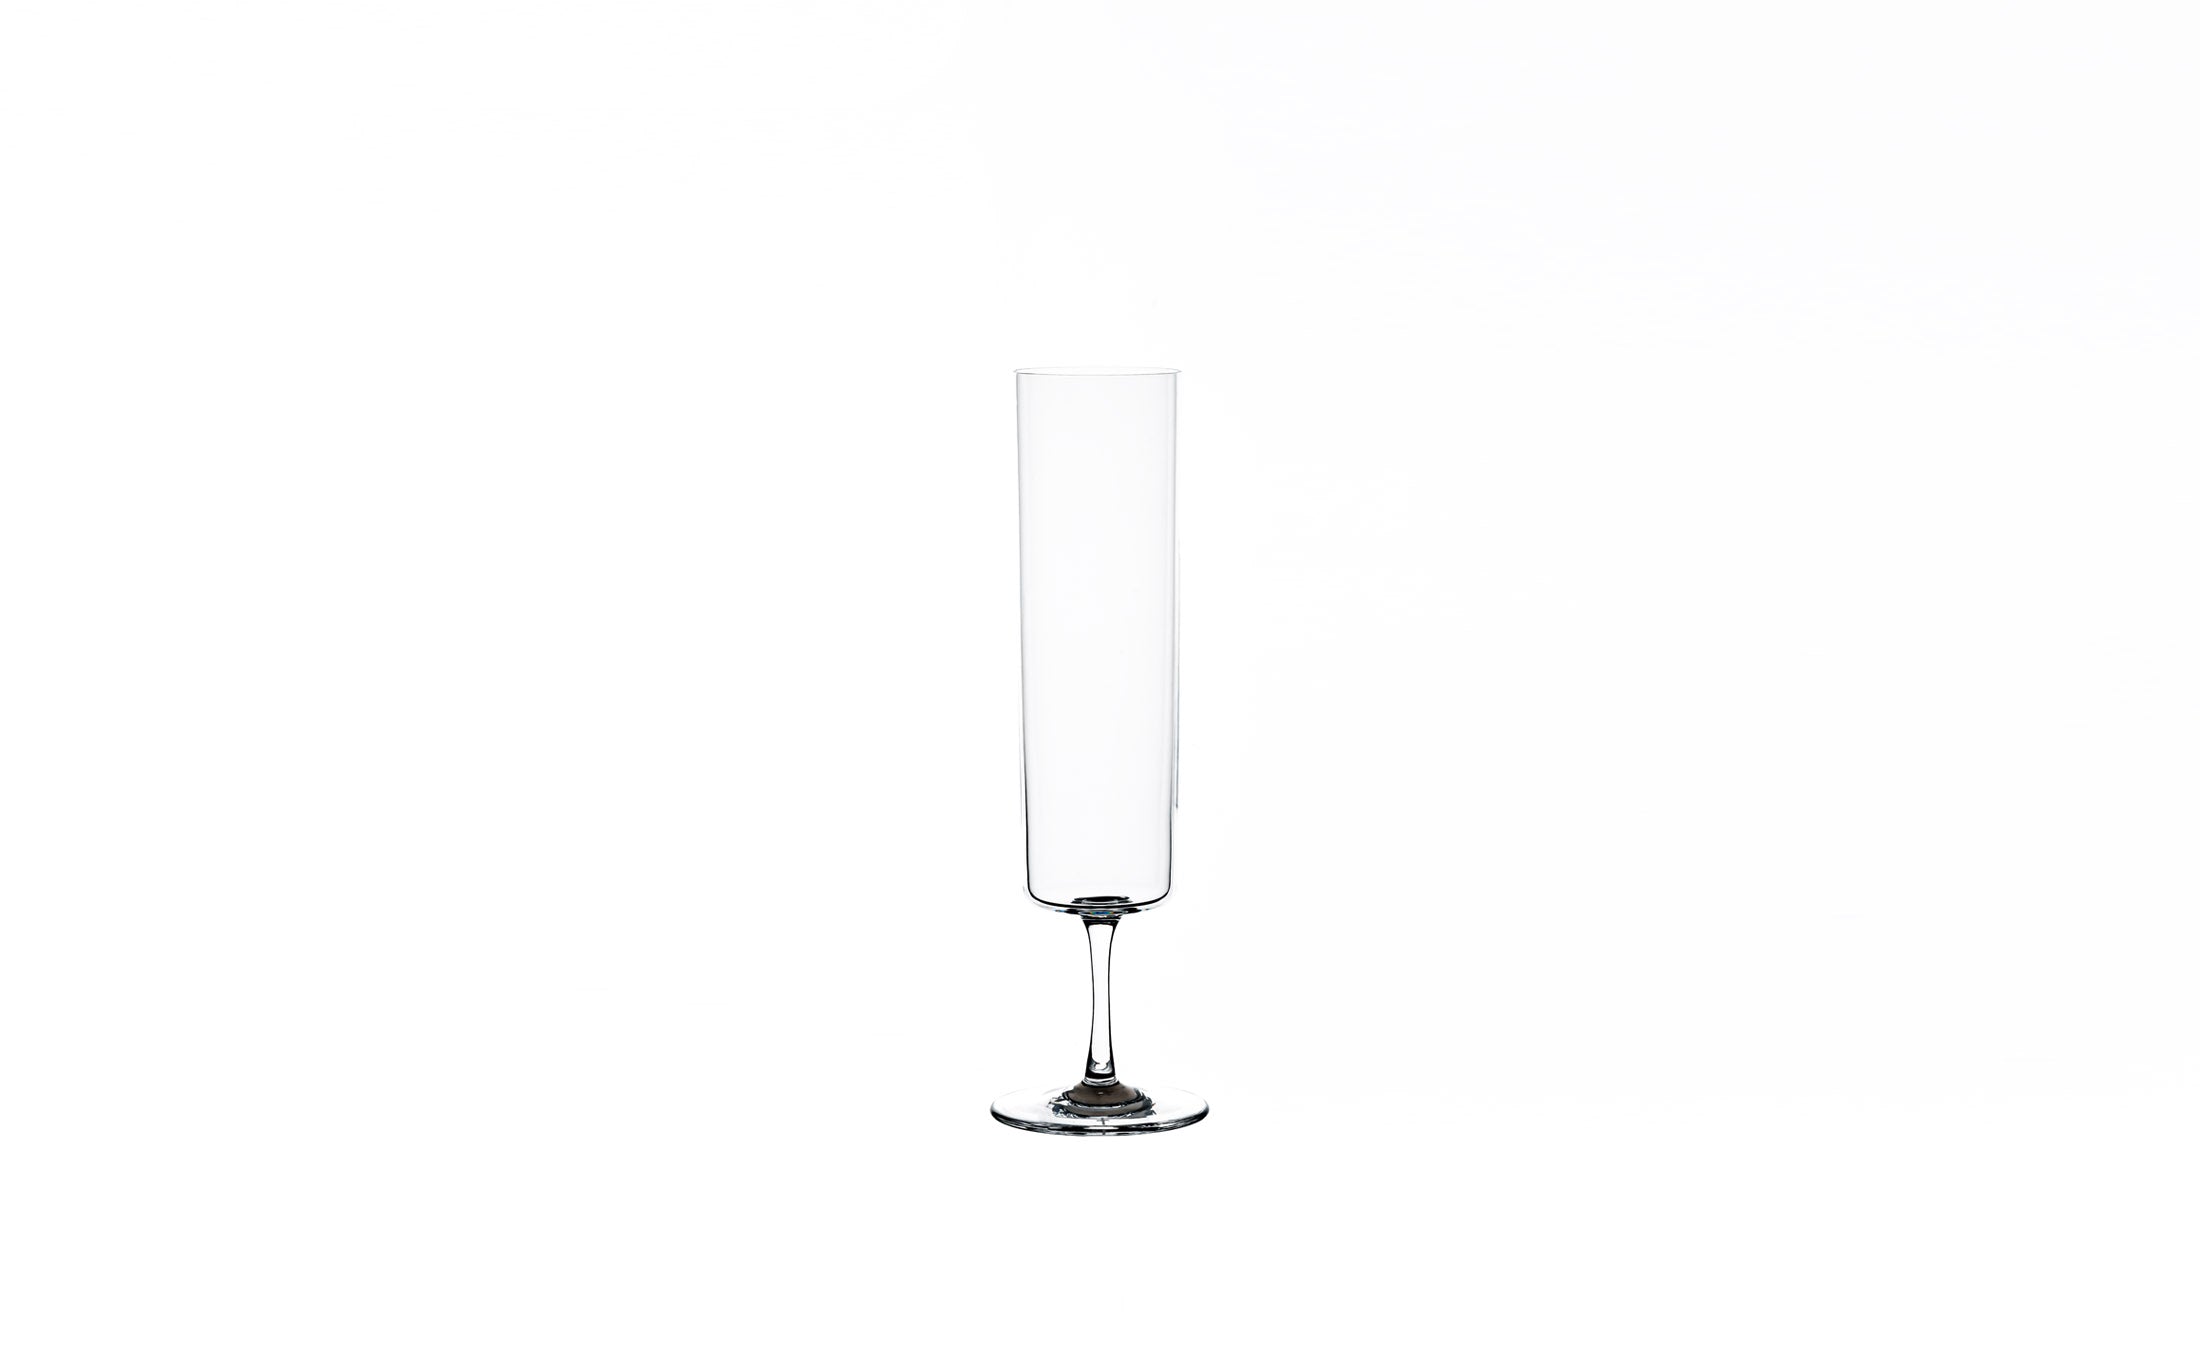 Raisin - Glass "Vin Mousseux"